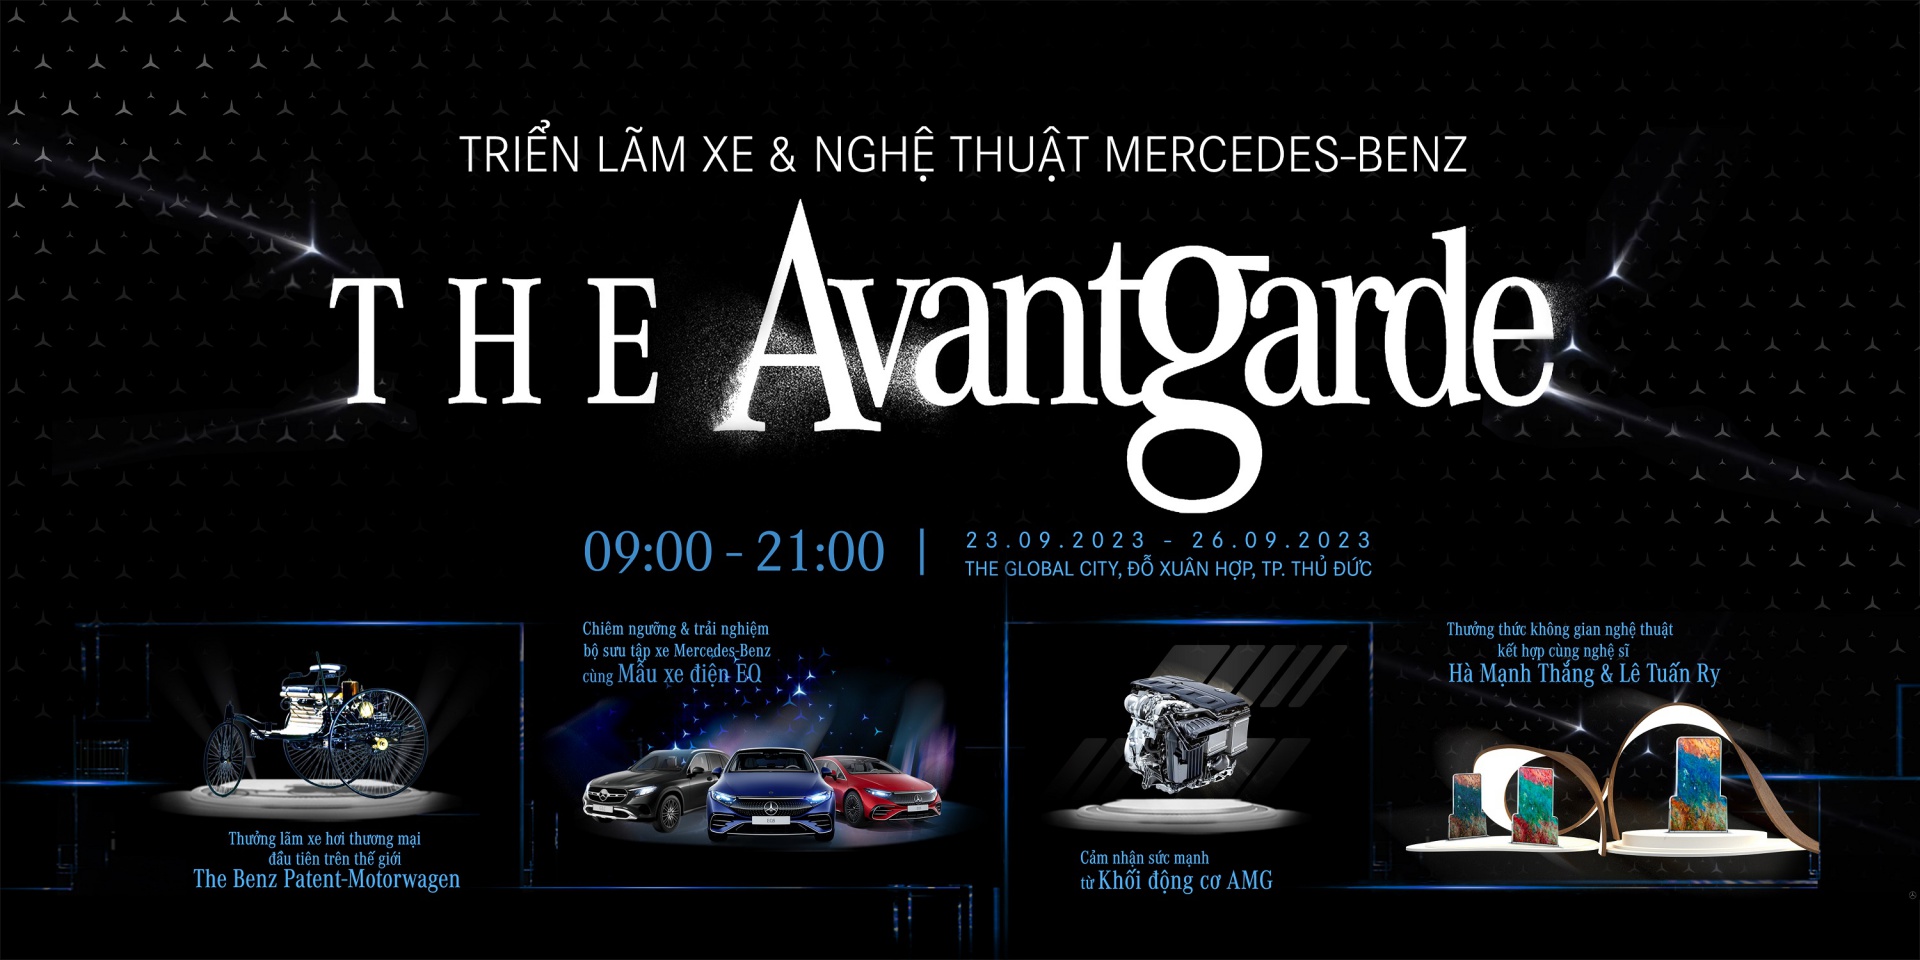 Mercedes-Benz: The Avantgarde 2023 - Triển lãm xe và nghệ thuật